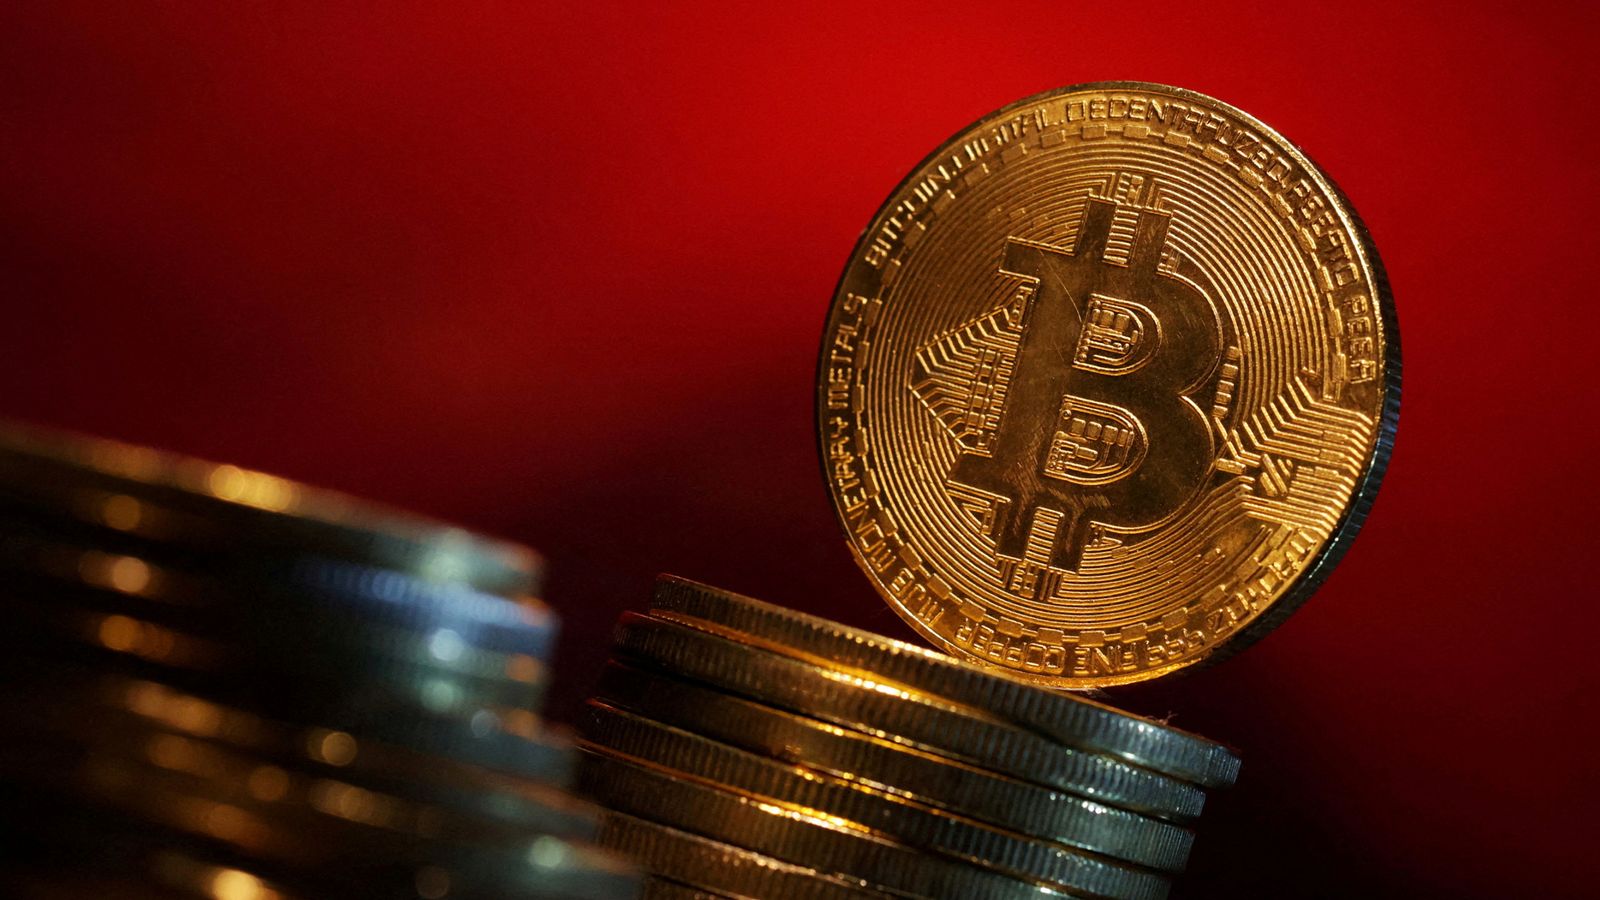 L’événement très attendu de «réduction de moitié» de Bitcoin a lieu |  Actualités scientifiques et technologiques